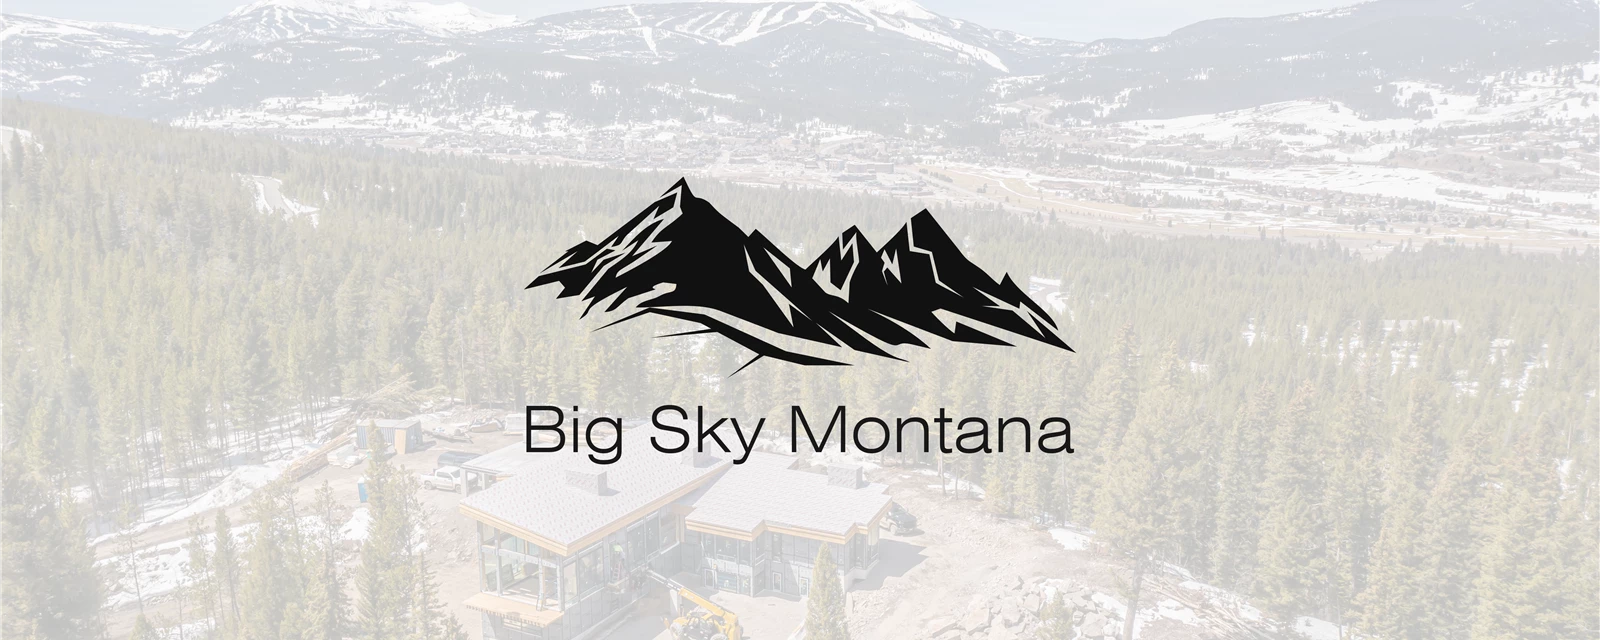 Big Sky Montana Cover